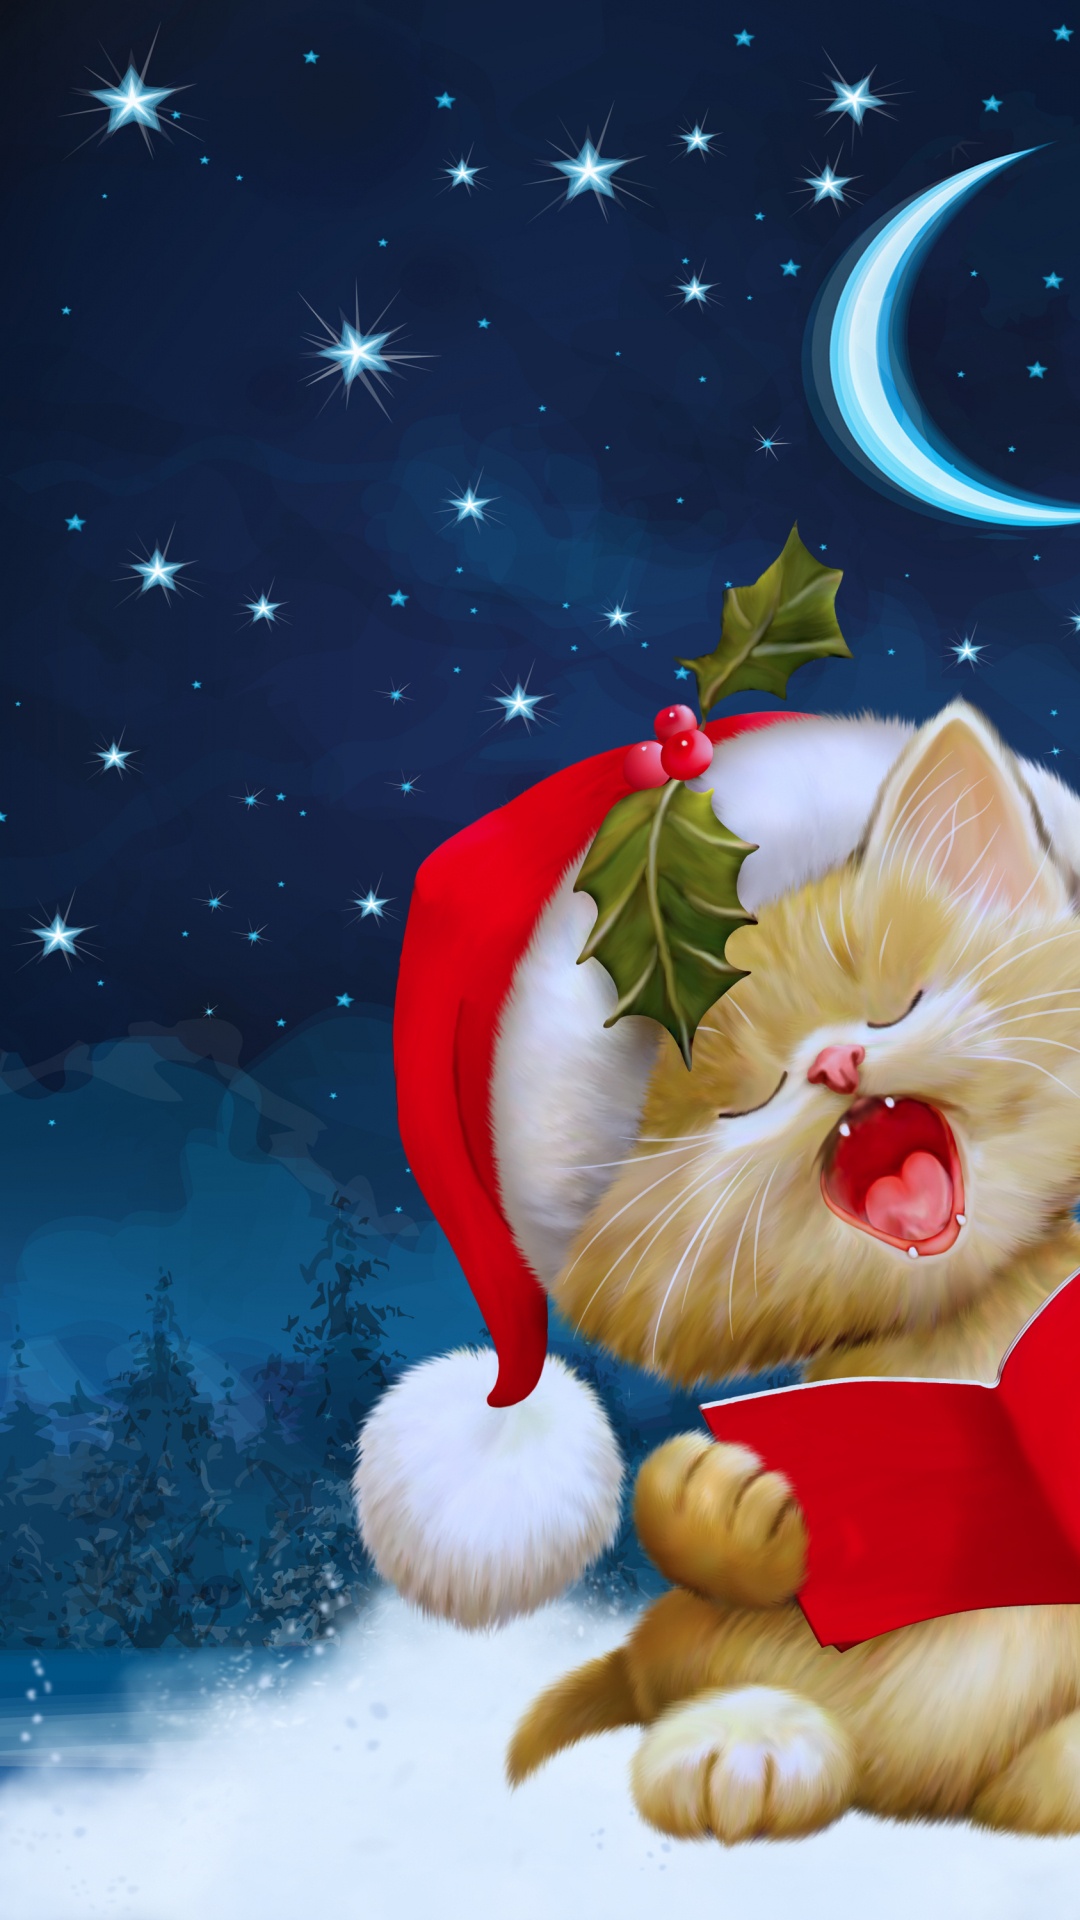 Navidad, Decoración de la Navidad, Árbol de Año Nuevo, Nochevieja. Wallpaper in 1080x1920 Resolution